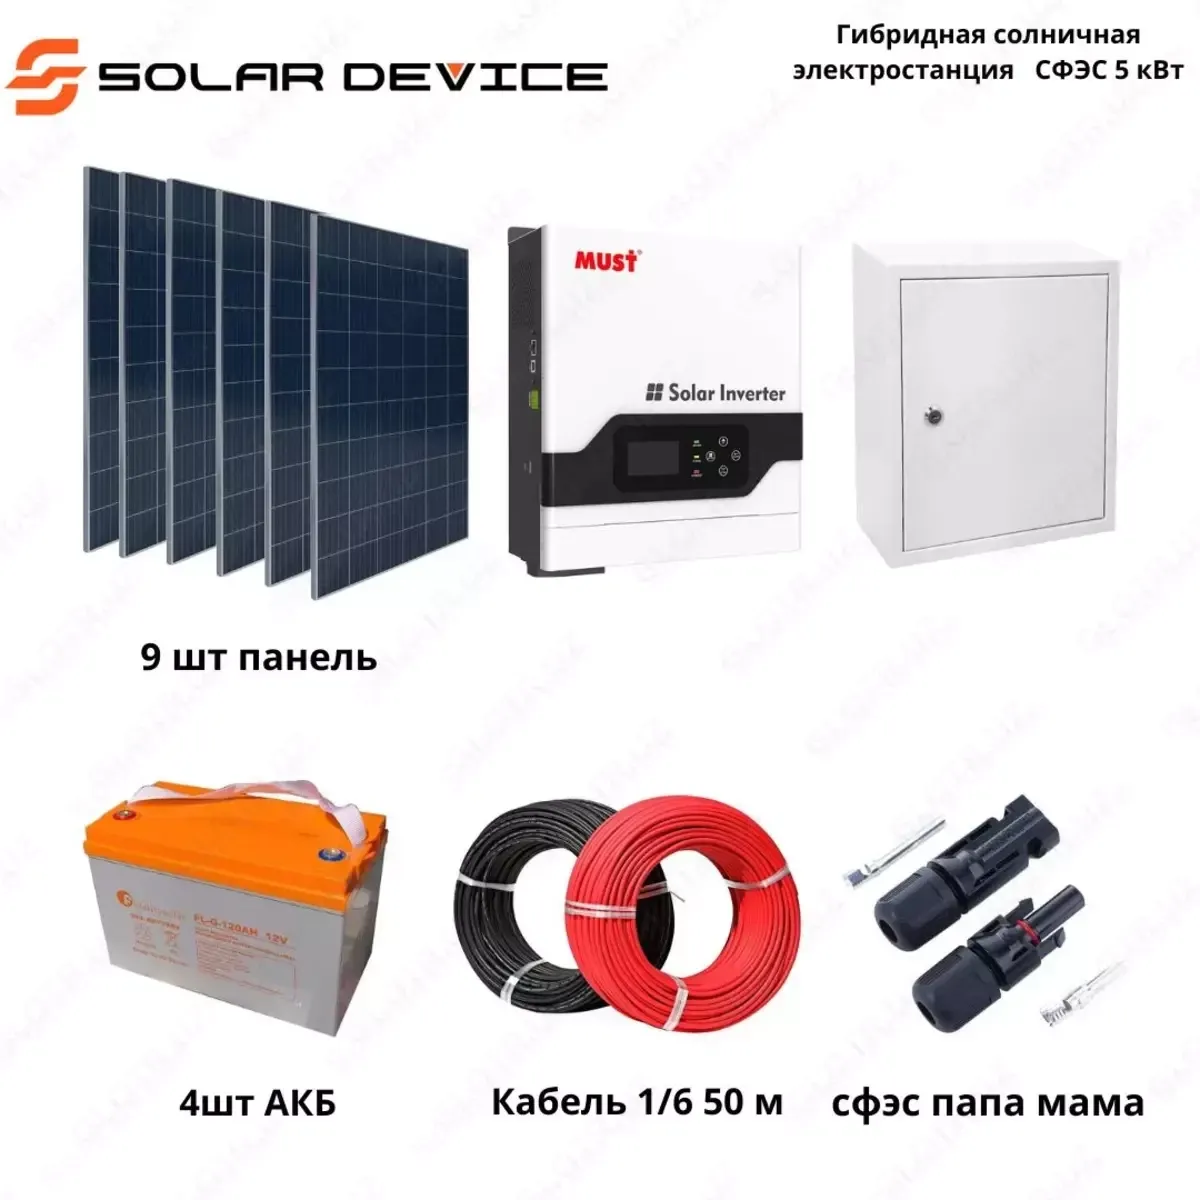 Гибридная солнечная электростанция "SOLAR" СФЭС (5 кВт)#1